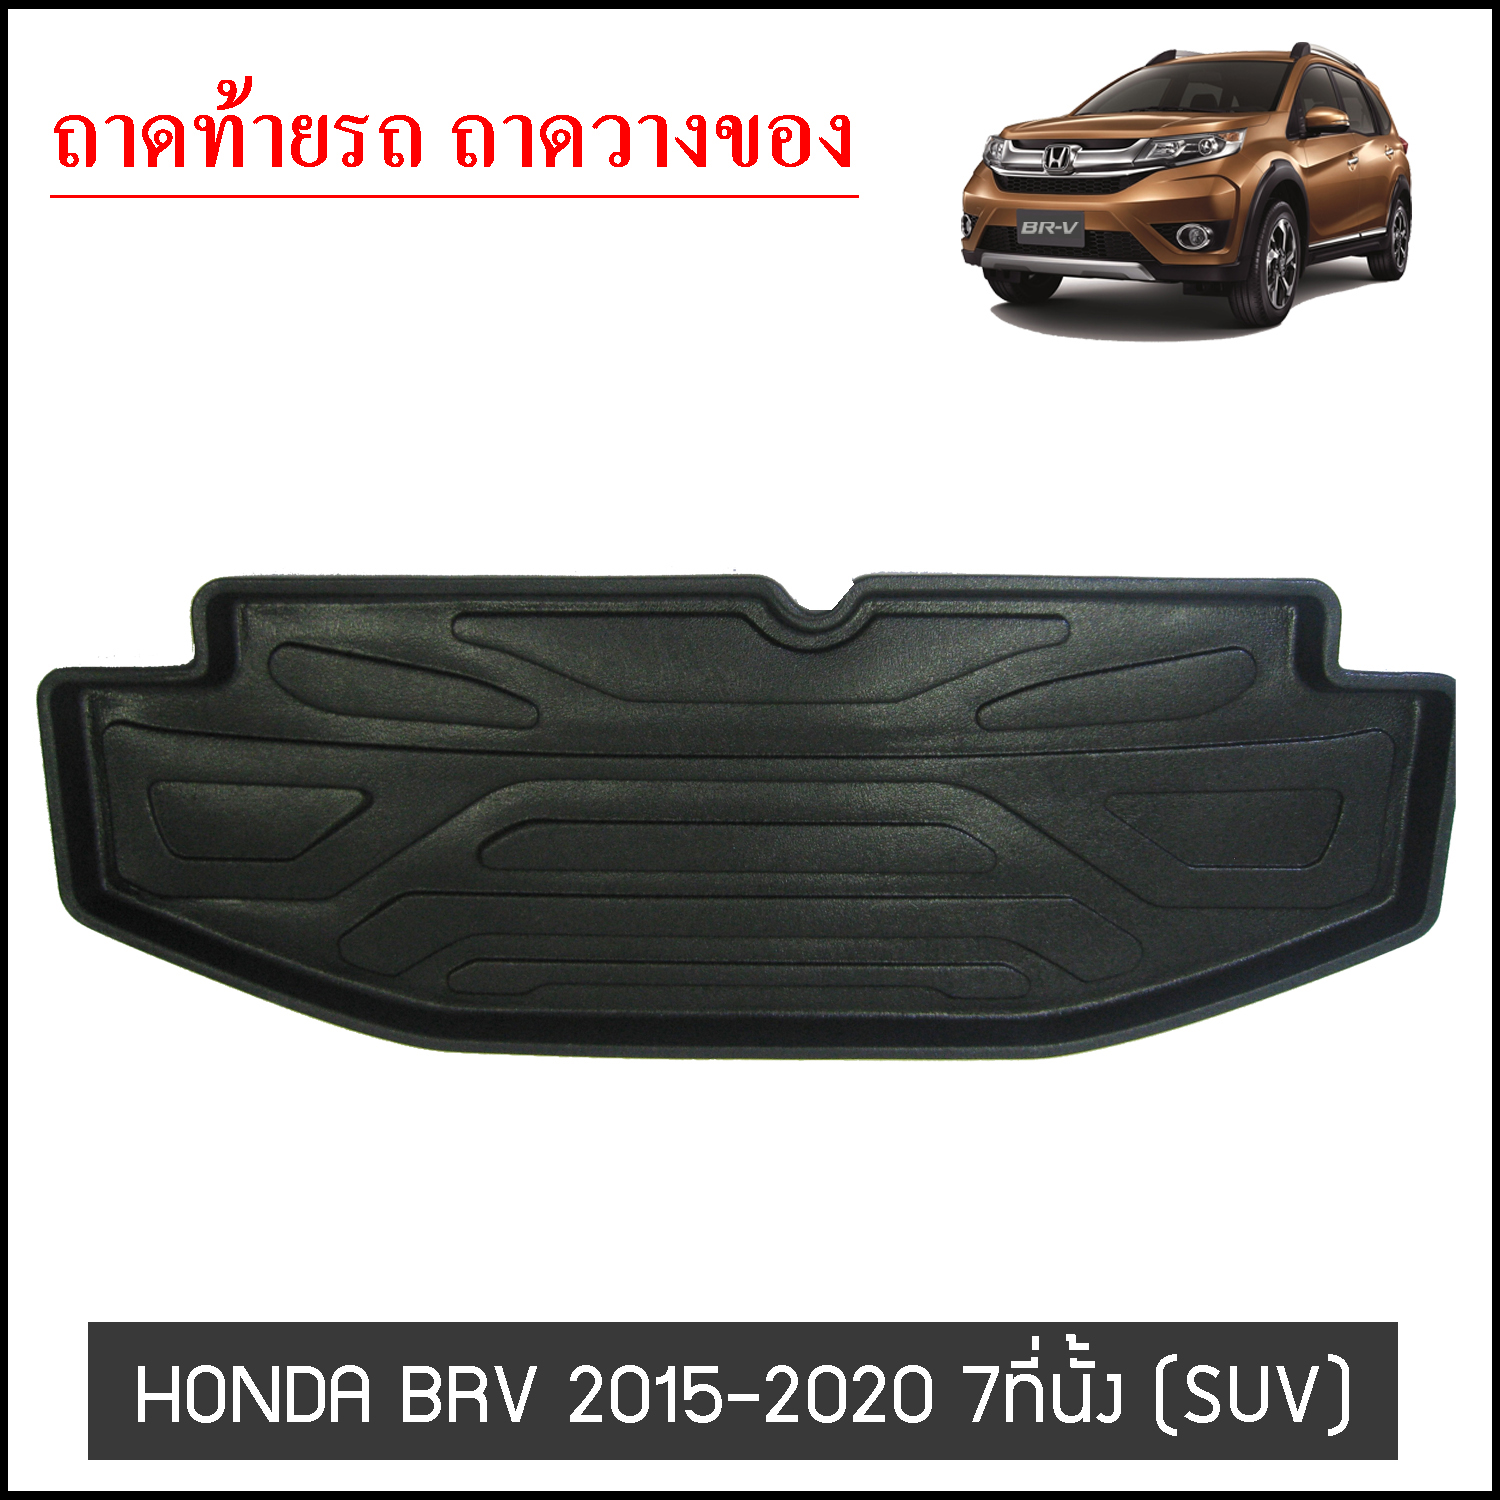 ถาดท้ายวางของ Honda BRV 2015-2020 7ที่ันั้ง